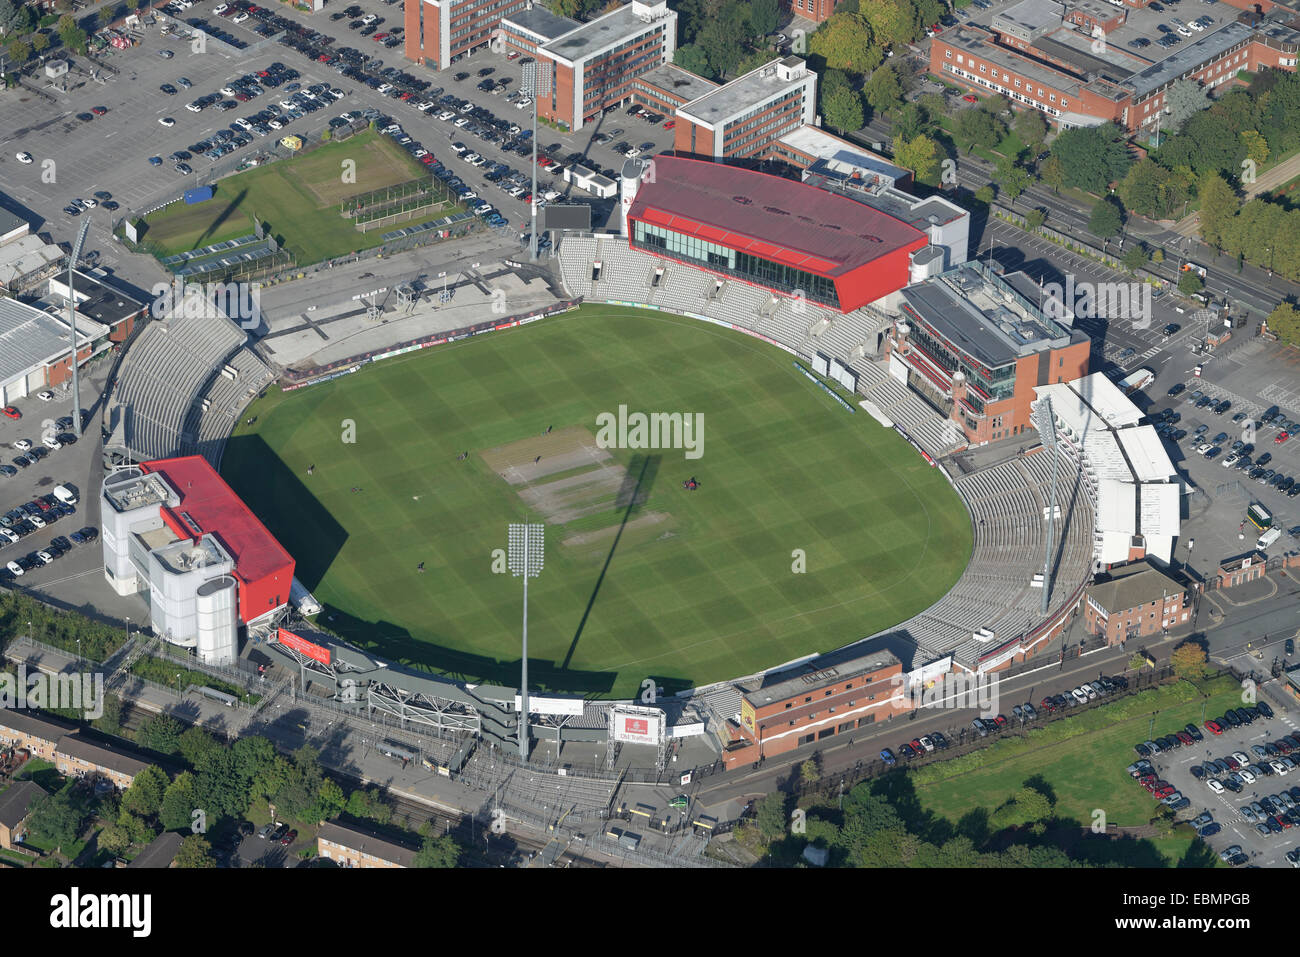 Une vue aérienne du terrain de cricket Old Trafford Manchester. Accueil de Lancashire County Cricket Club Banque D'Images